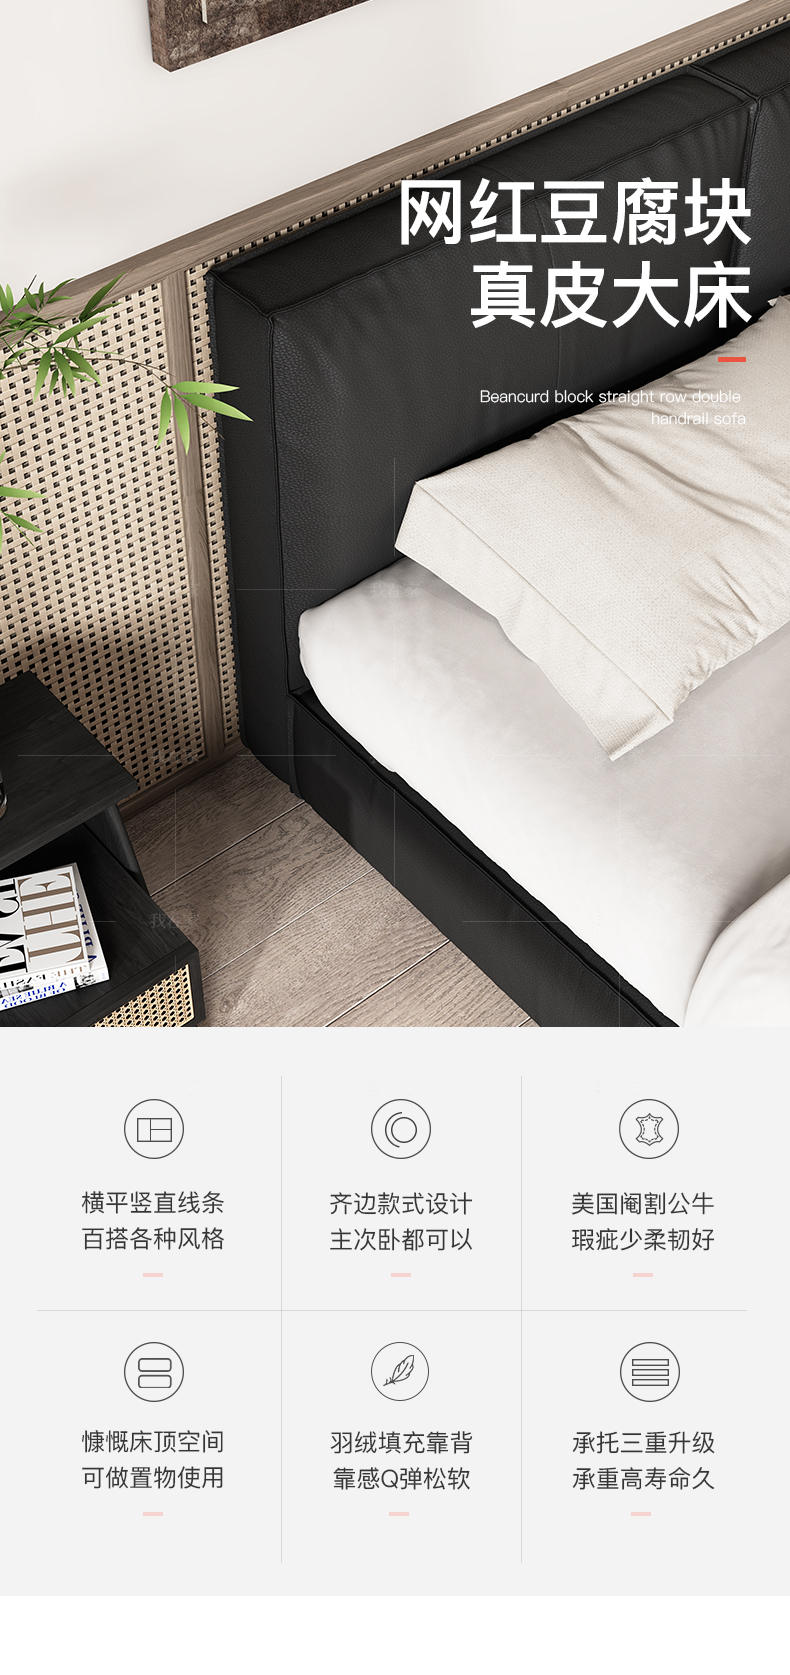 中古风风格豆腐块双人床的家具详细介绍